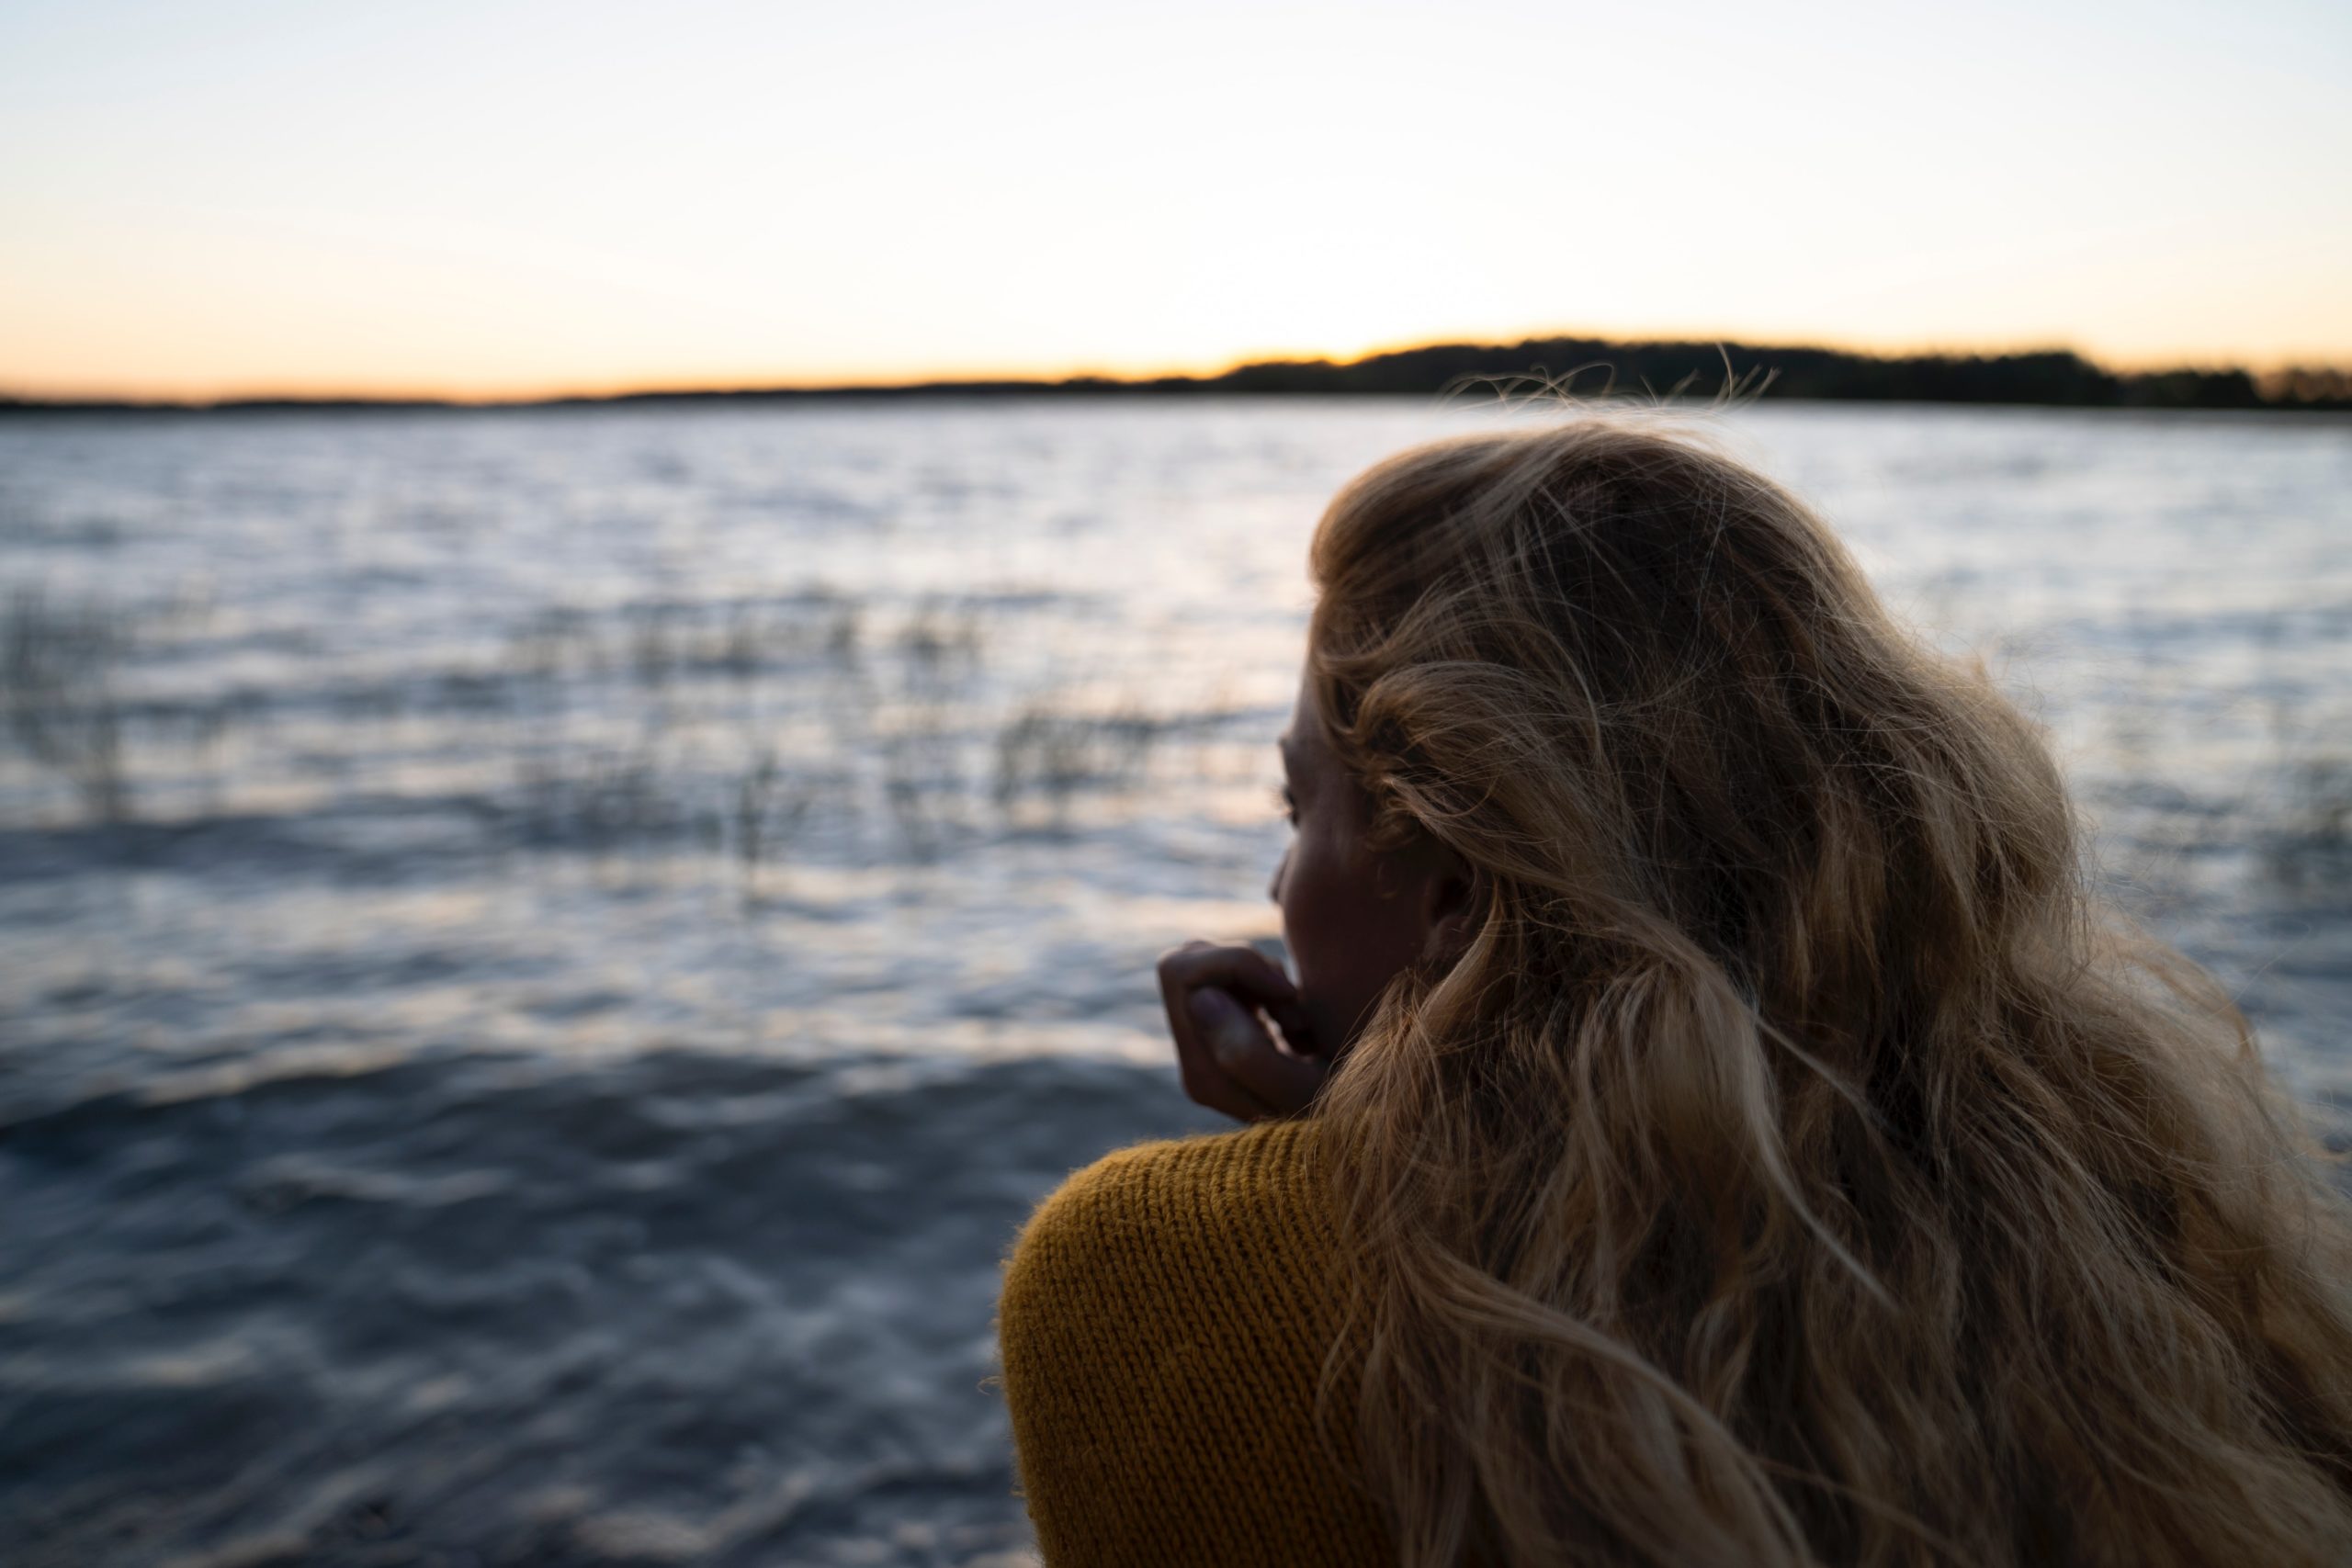 vaaleahiuksinen nainen istuu selkä kameraan päin ja katsoomerelle tai järvelle. Ilta alkaa hämärtyä ja vedessä on pientä aaltoilua. Naisella on yllään villapaita